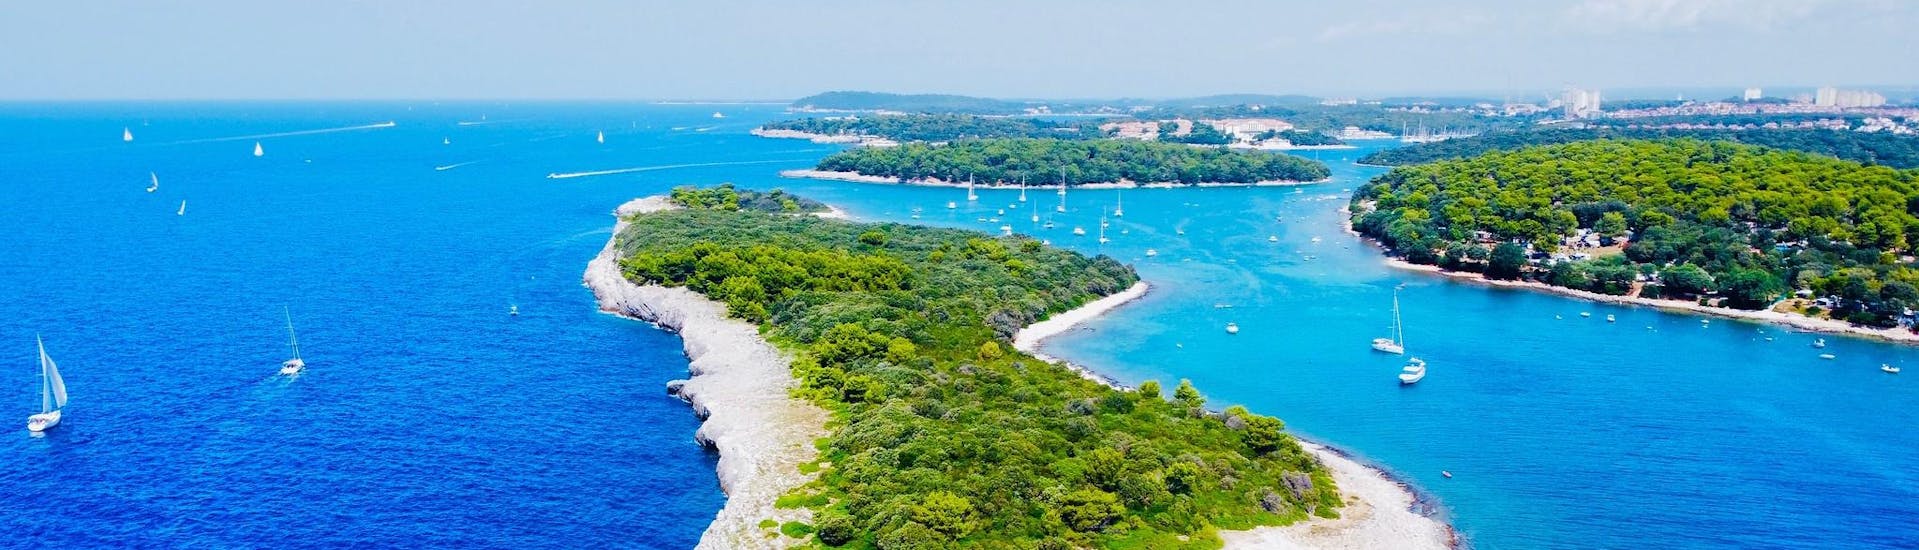 Luchtfoto van een eiland in Banjole, een niet te missen locatie voor boottochten in Kroatië.